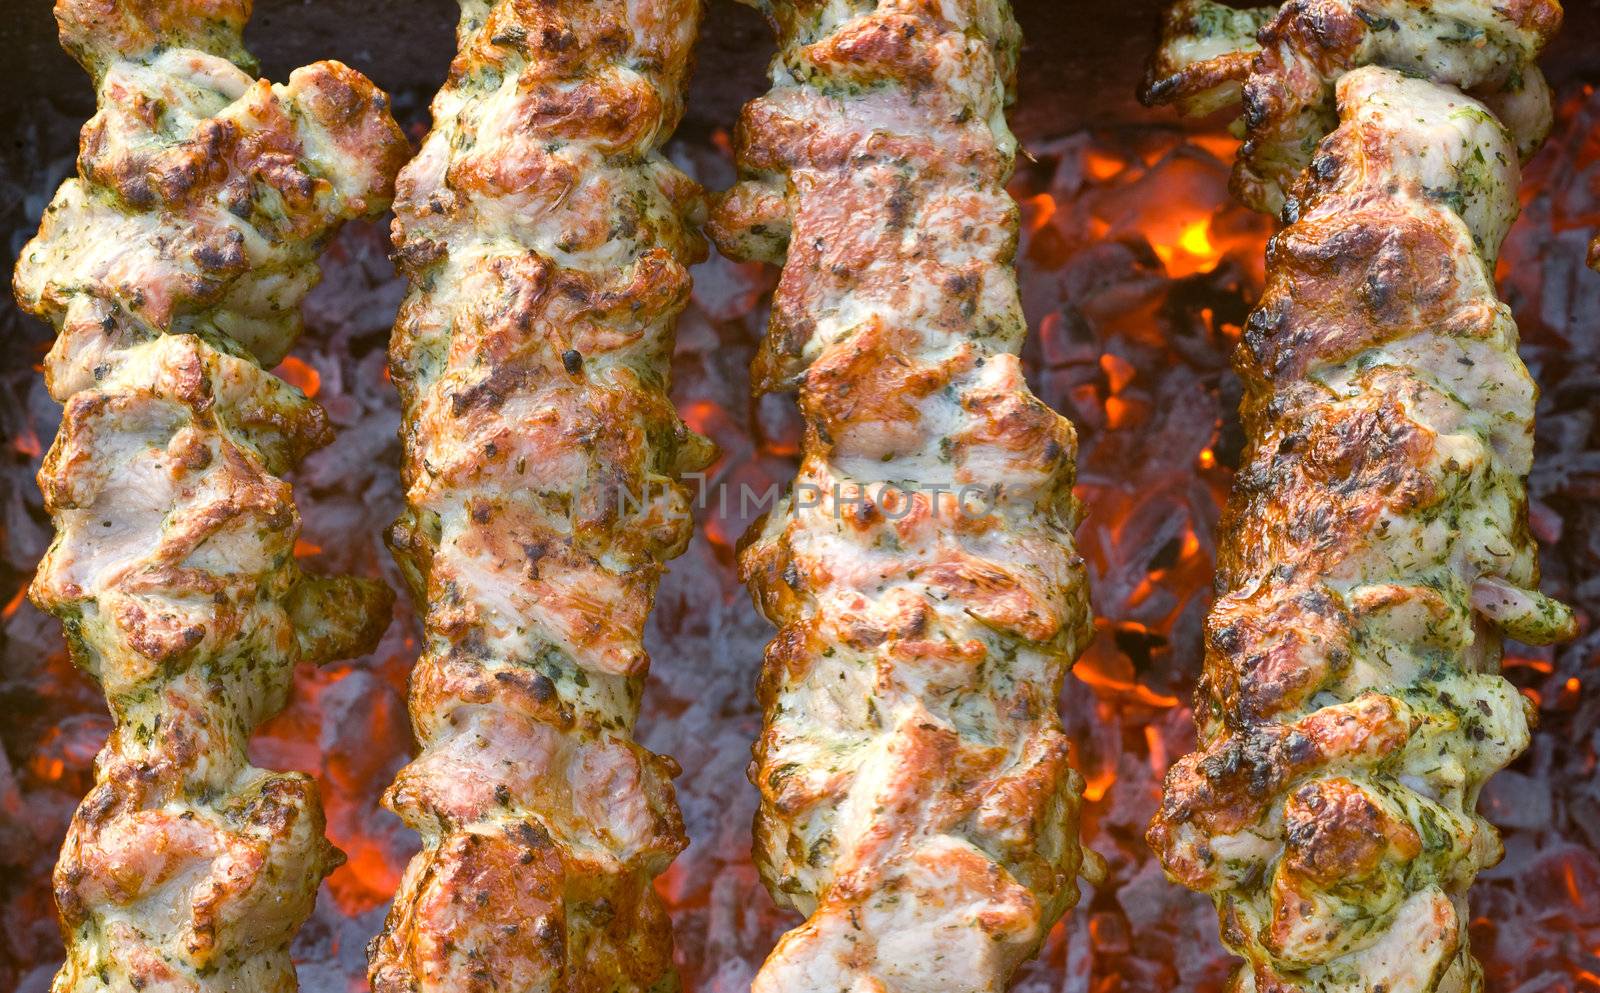 Shish kebab by fotoedgaras